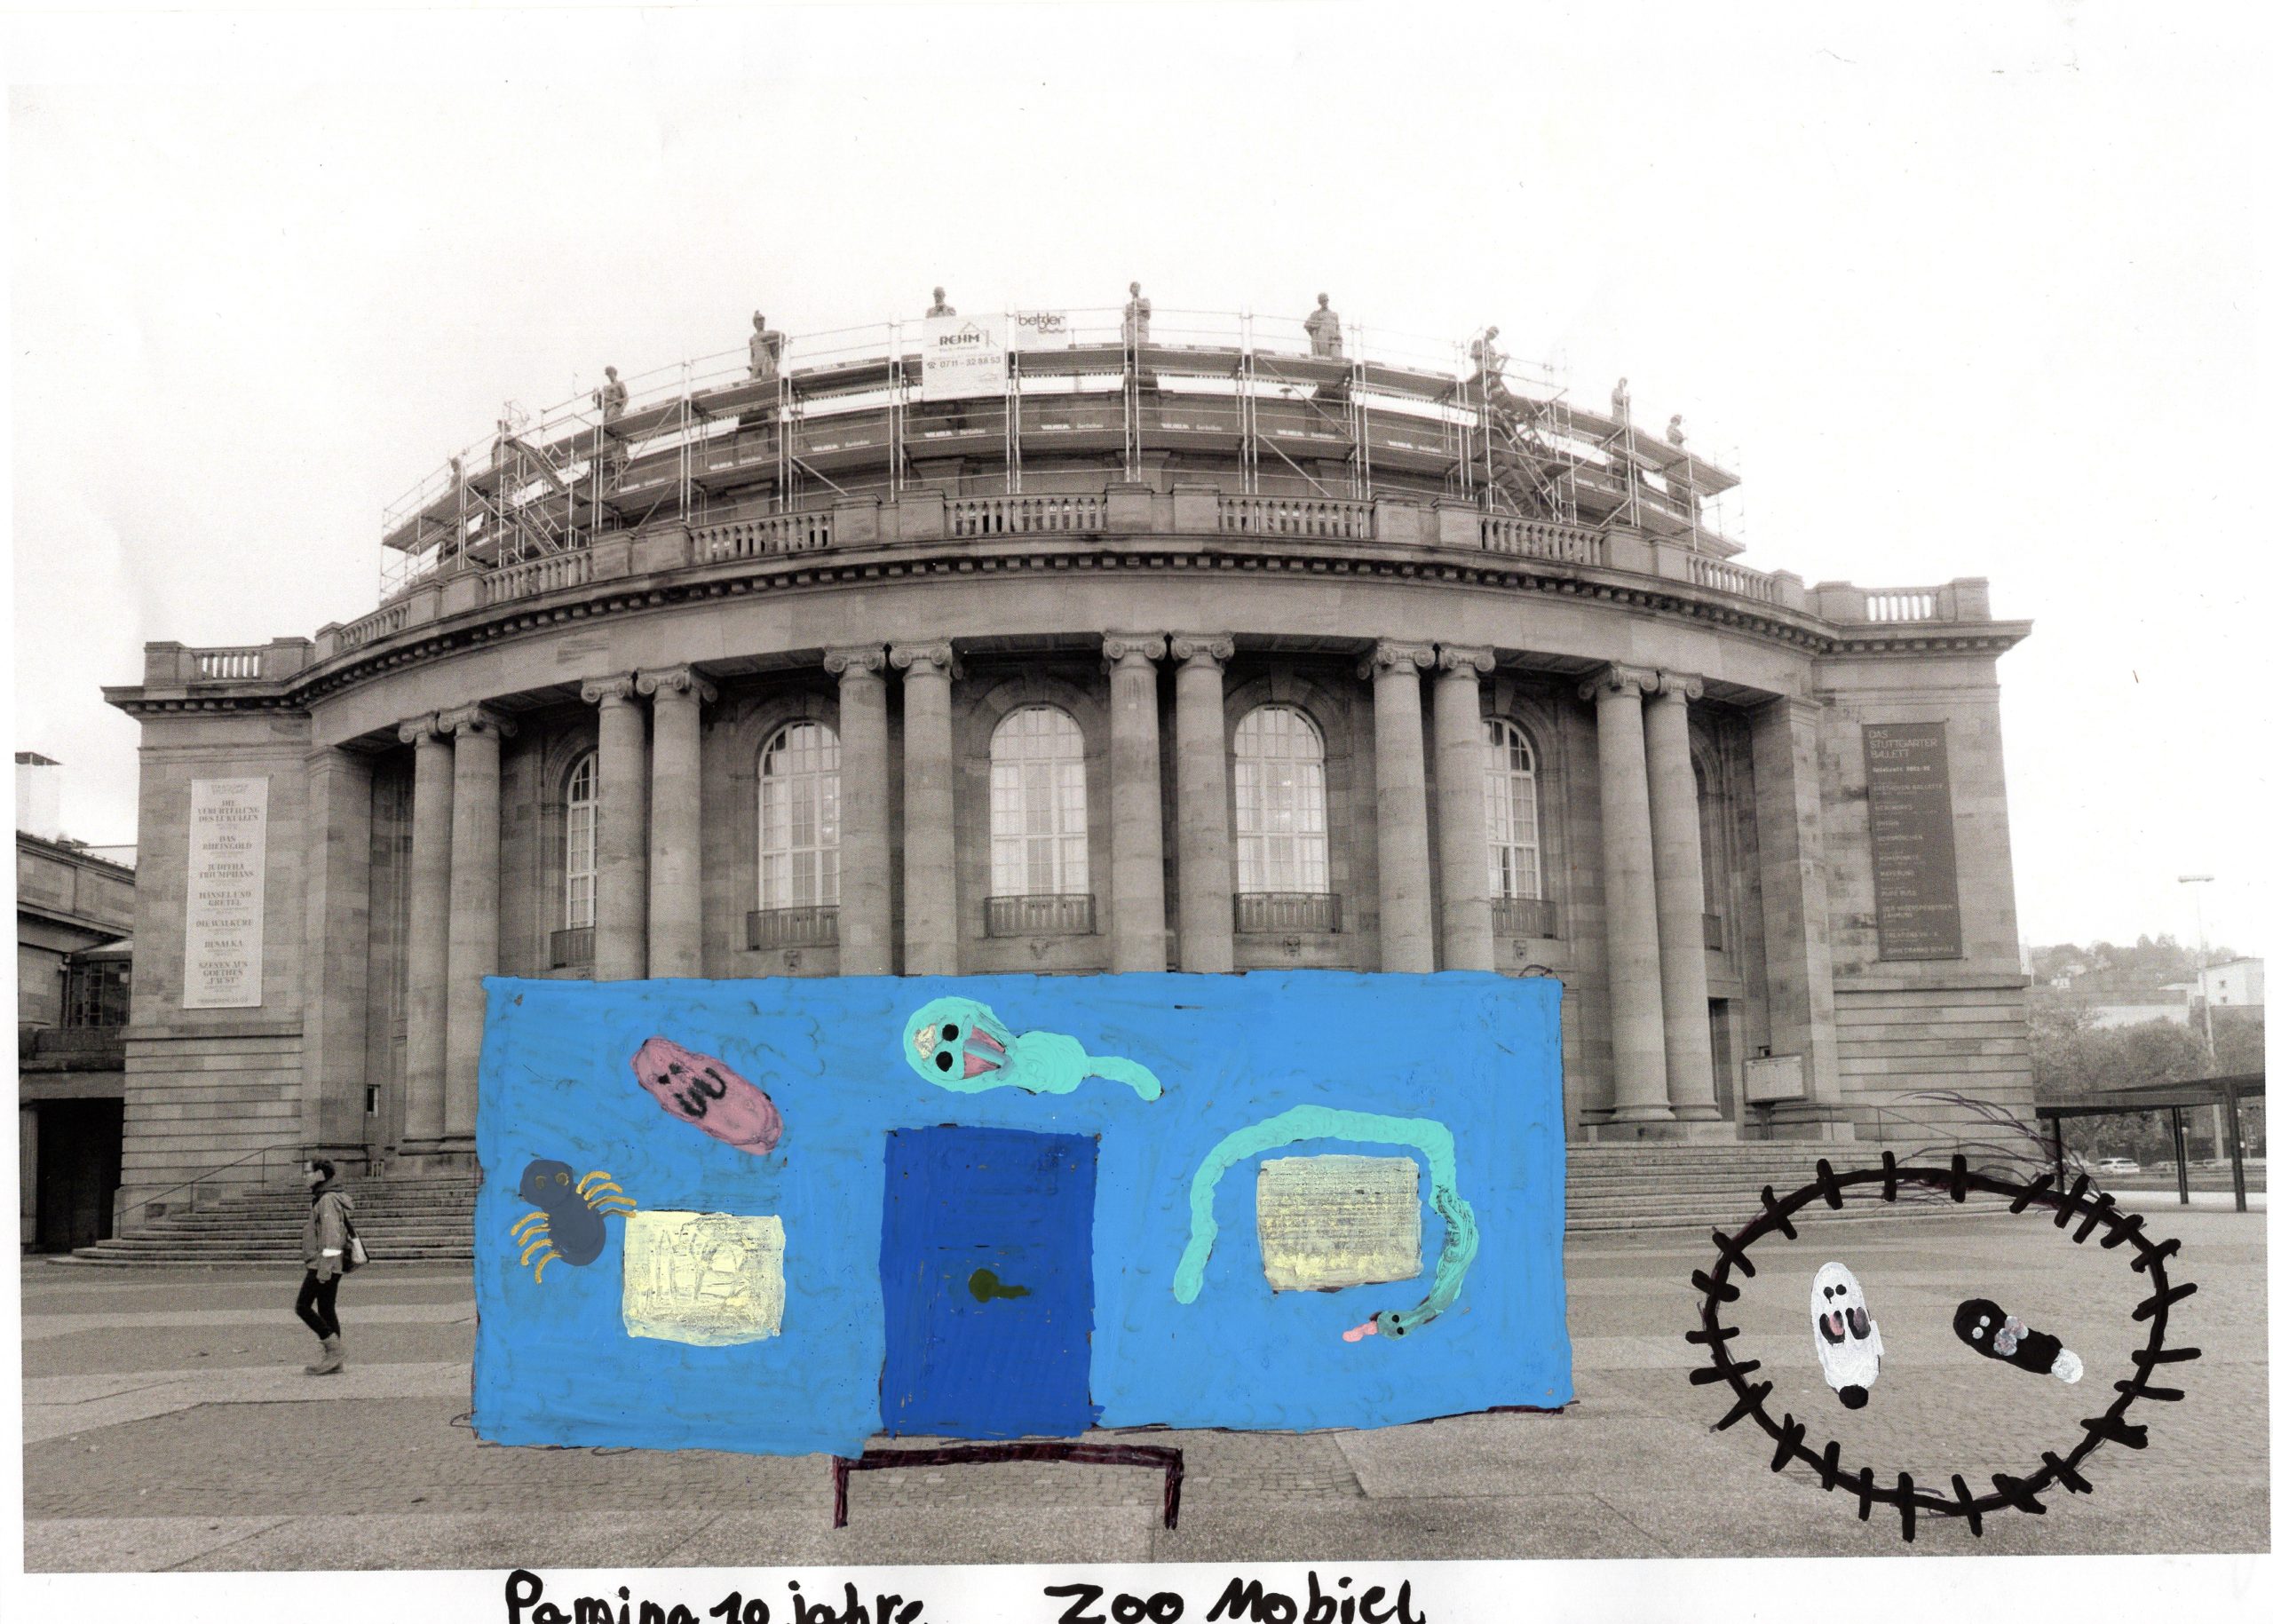 Das Bild zeigt die Oper. Davor ist ein Container eingezeichnet, der ein Aquarium enthält.